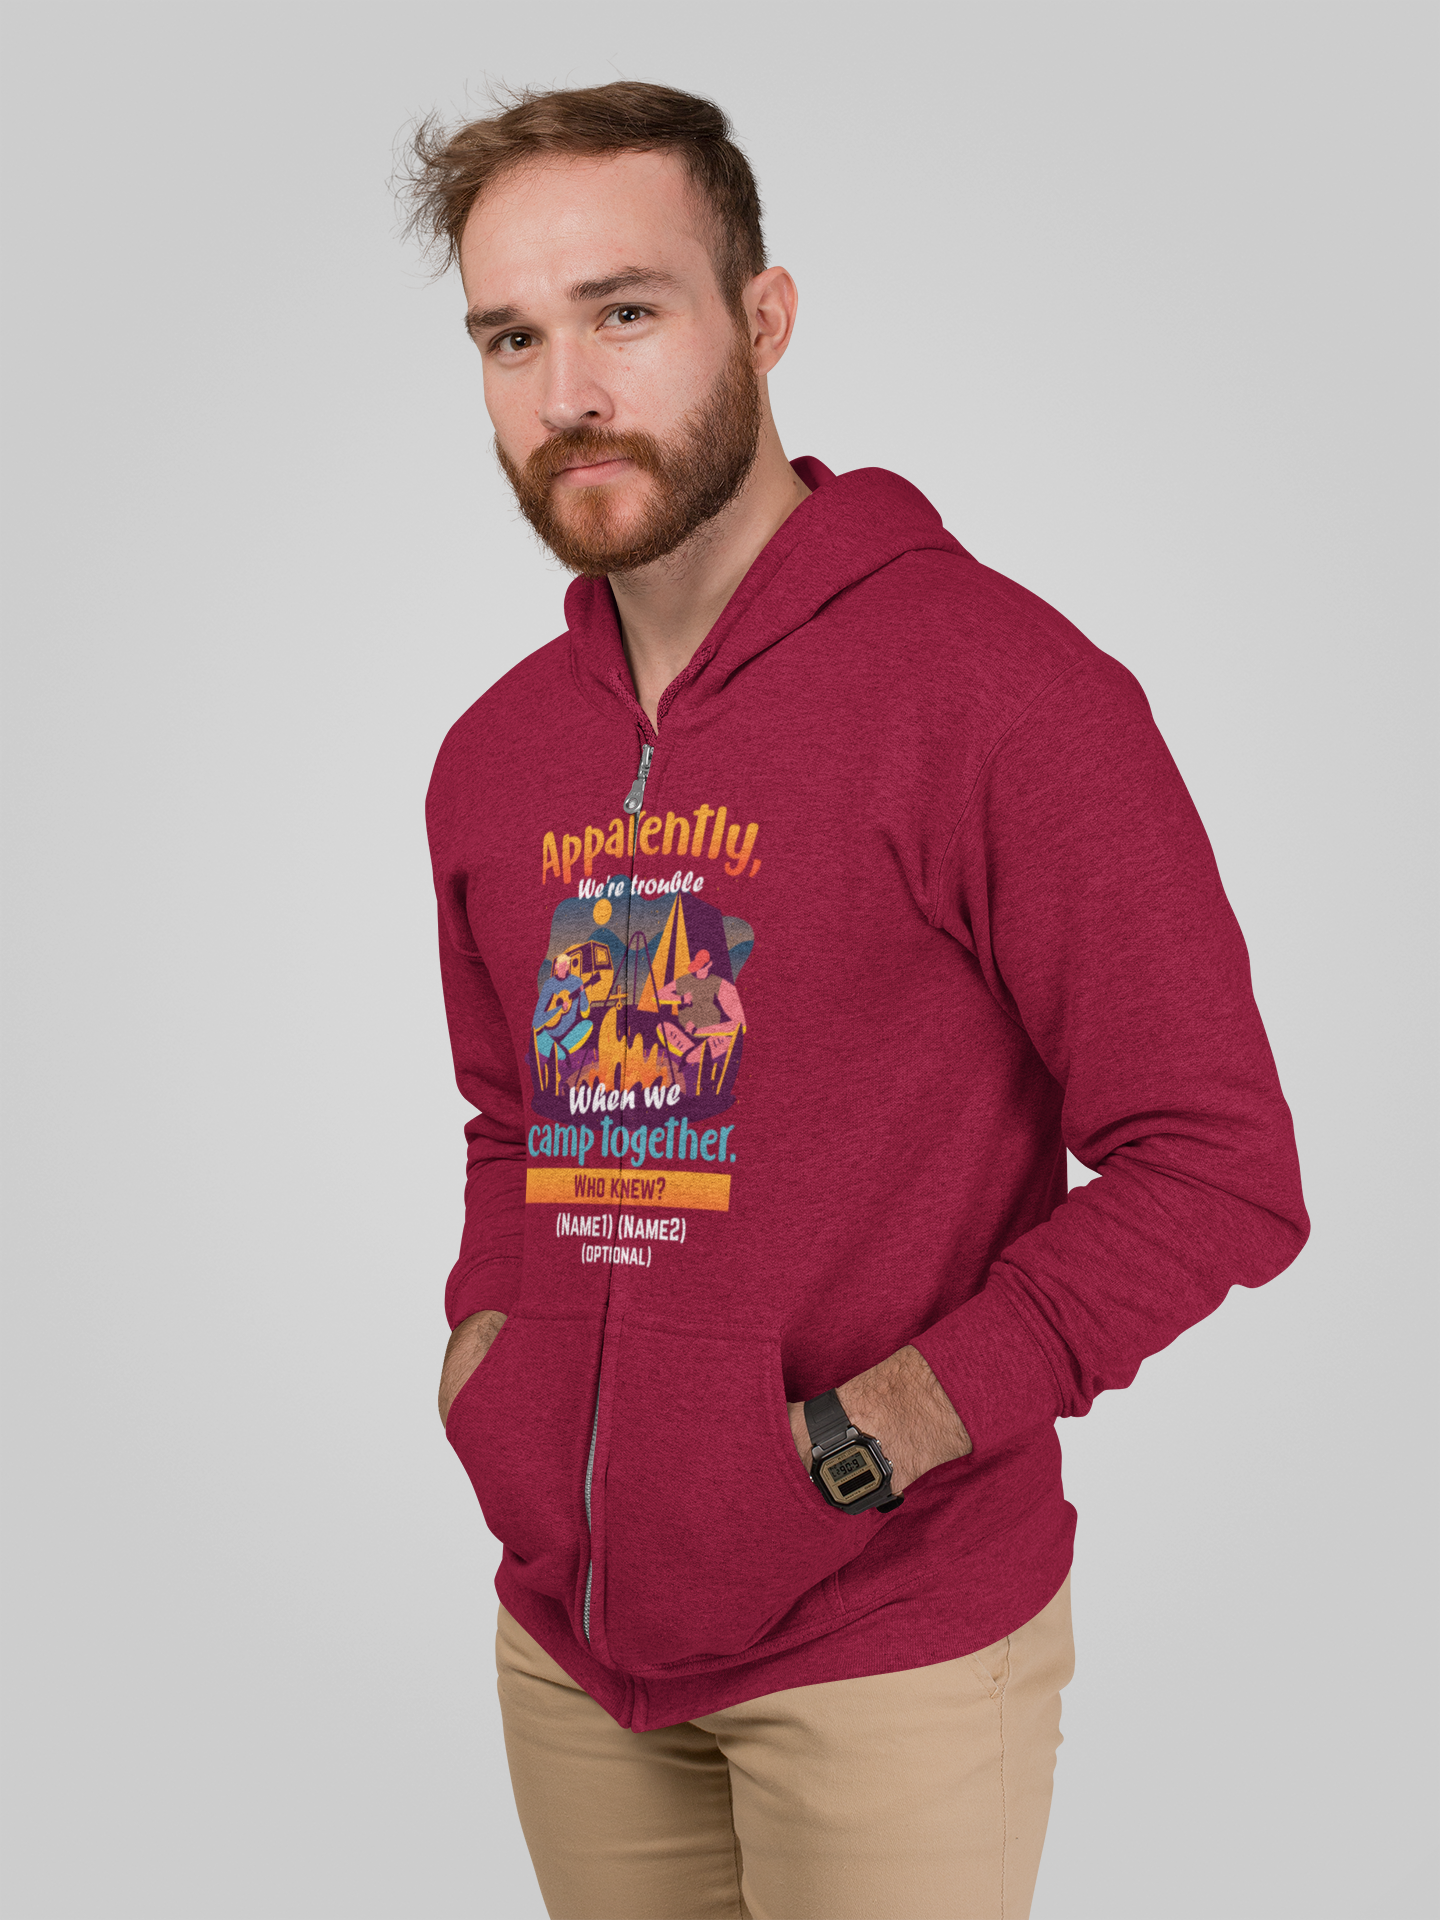 We're trouble together; Full-zip hoodie sweatshirt